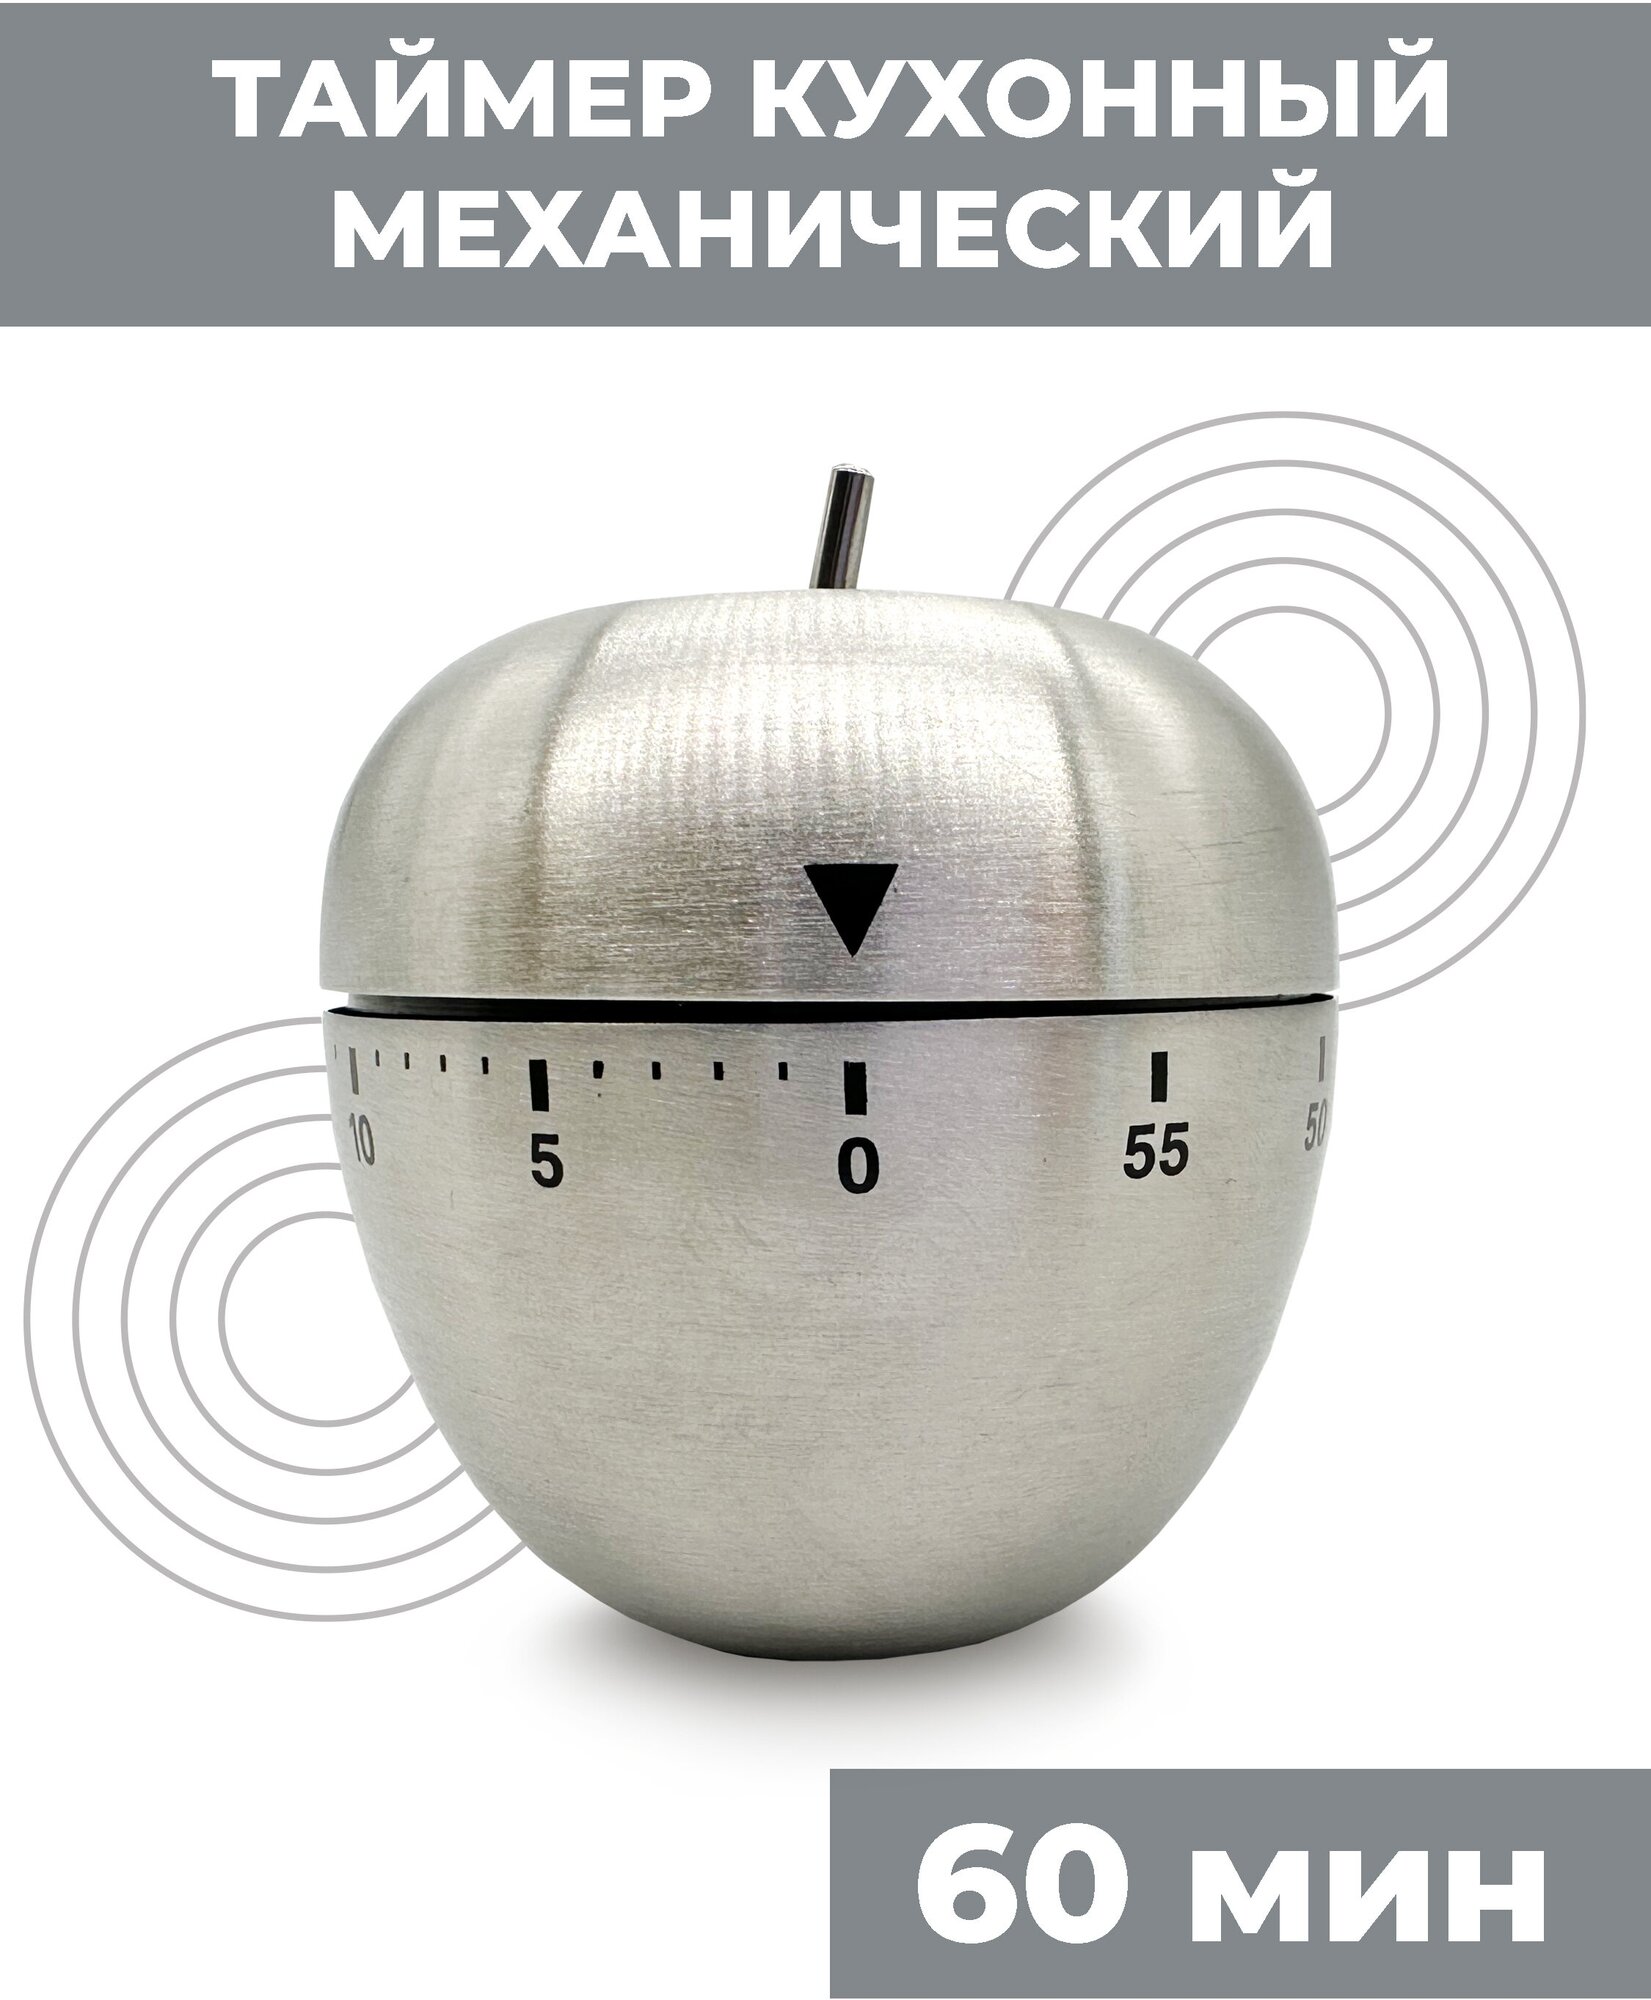 Таймер кухонный Boomshakalaka яблоко, механический, металлический, для кухни, для готовки, без батареек